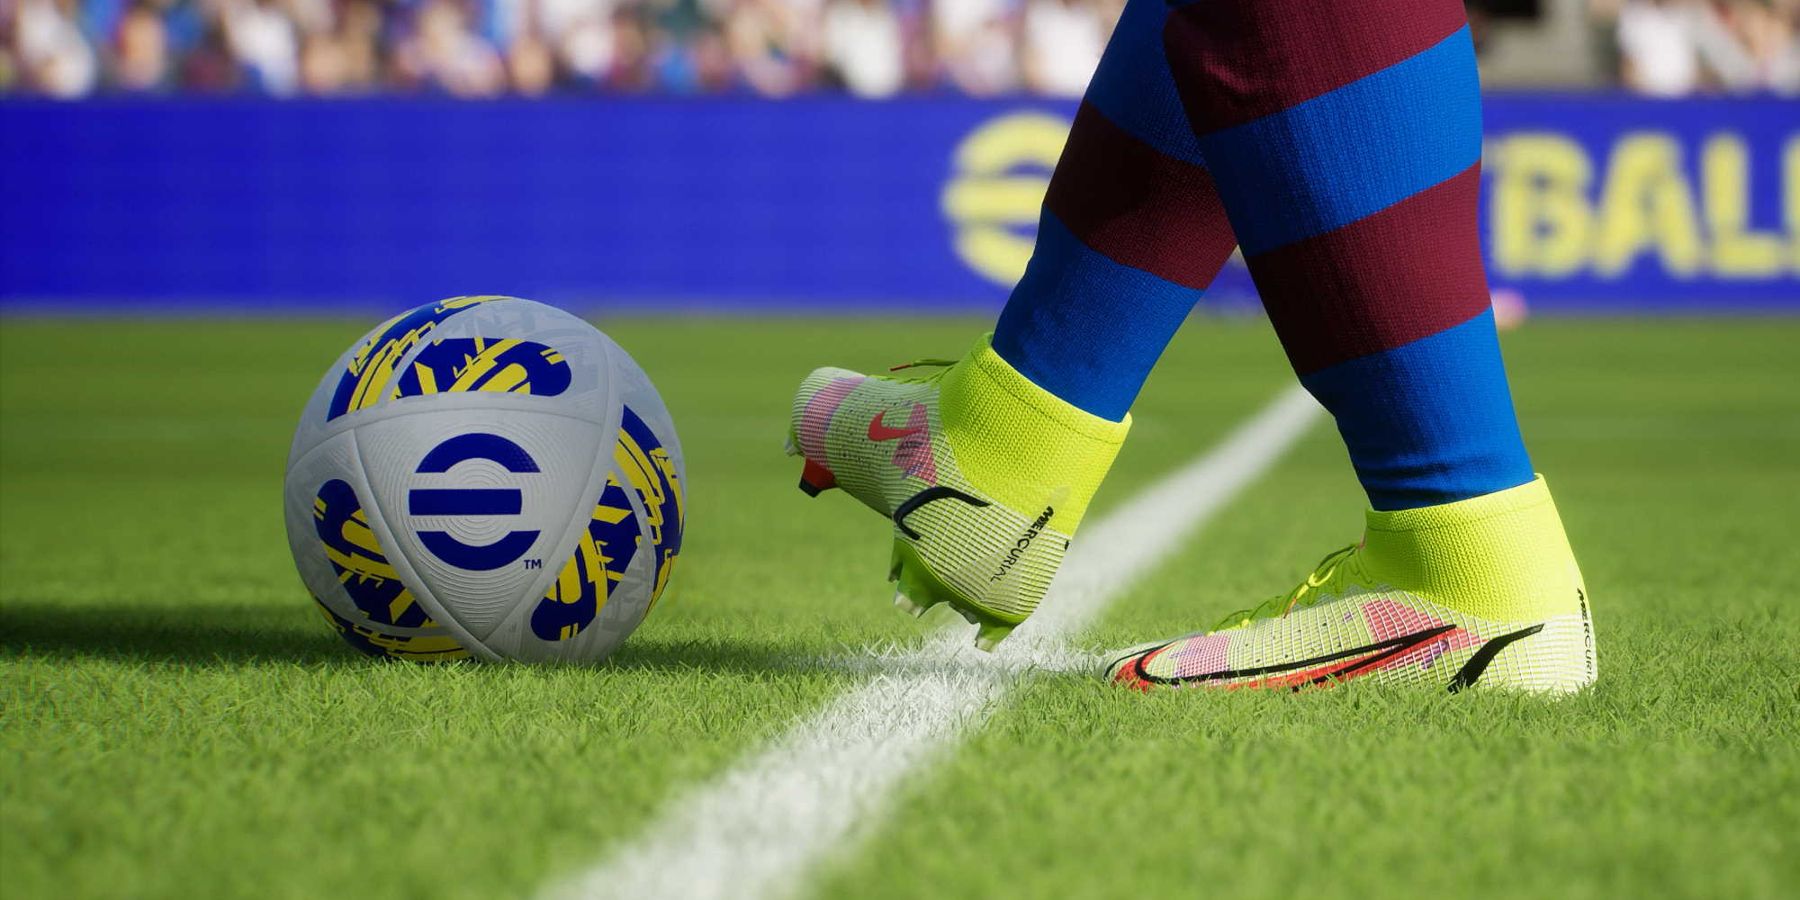 Konami Efootball თამაშს პოპულარული ფუნქციები აკლია